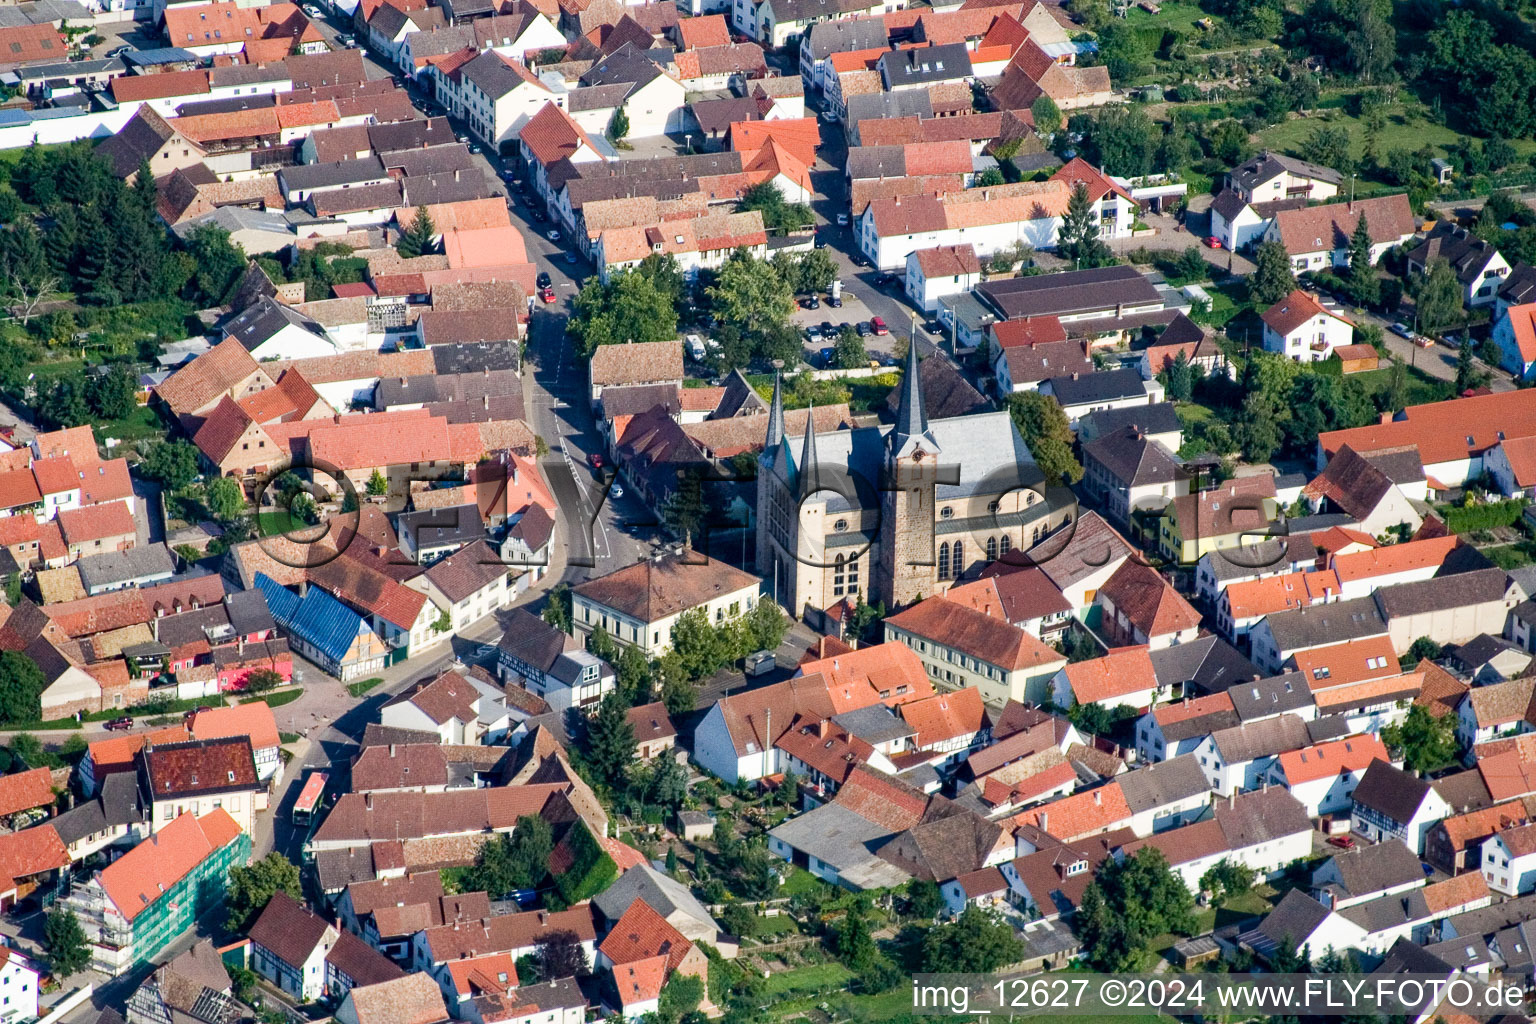 Aerial view of Village view in the district Geinsheim in Neustadt an der Weinstrasse in the state Rhineland-Palatinate